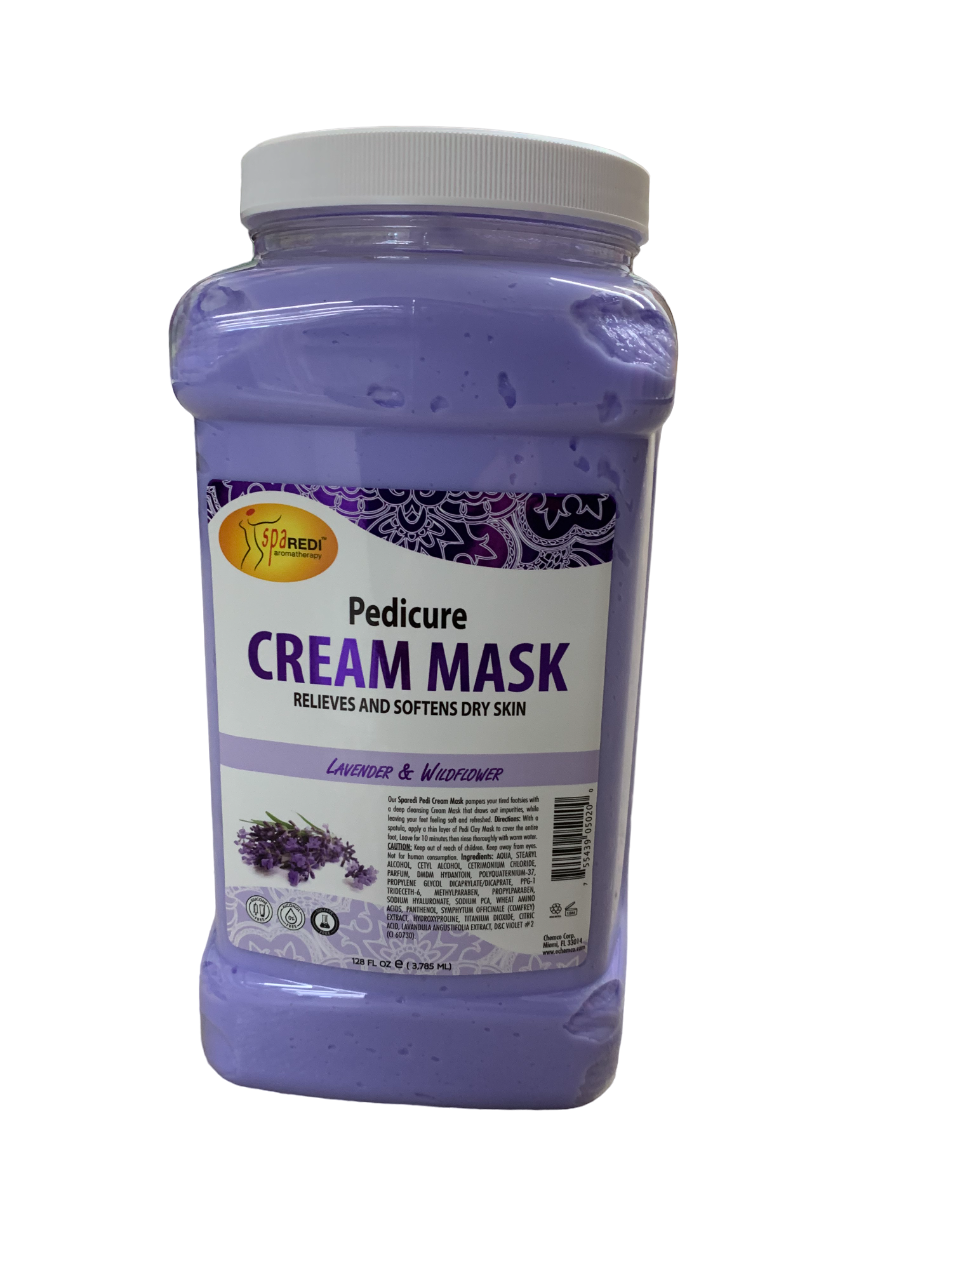 SpaRedi Pedicure Cream Mask Lavender and Wildflower